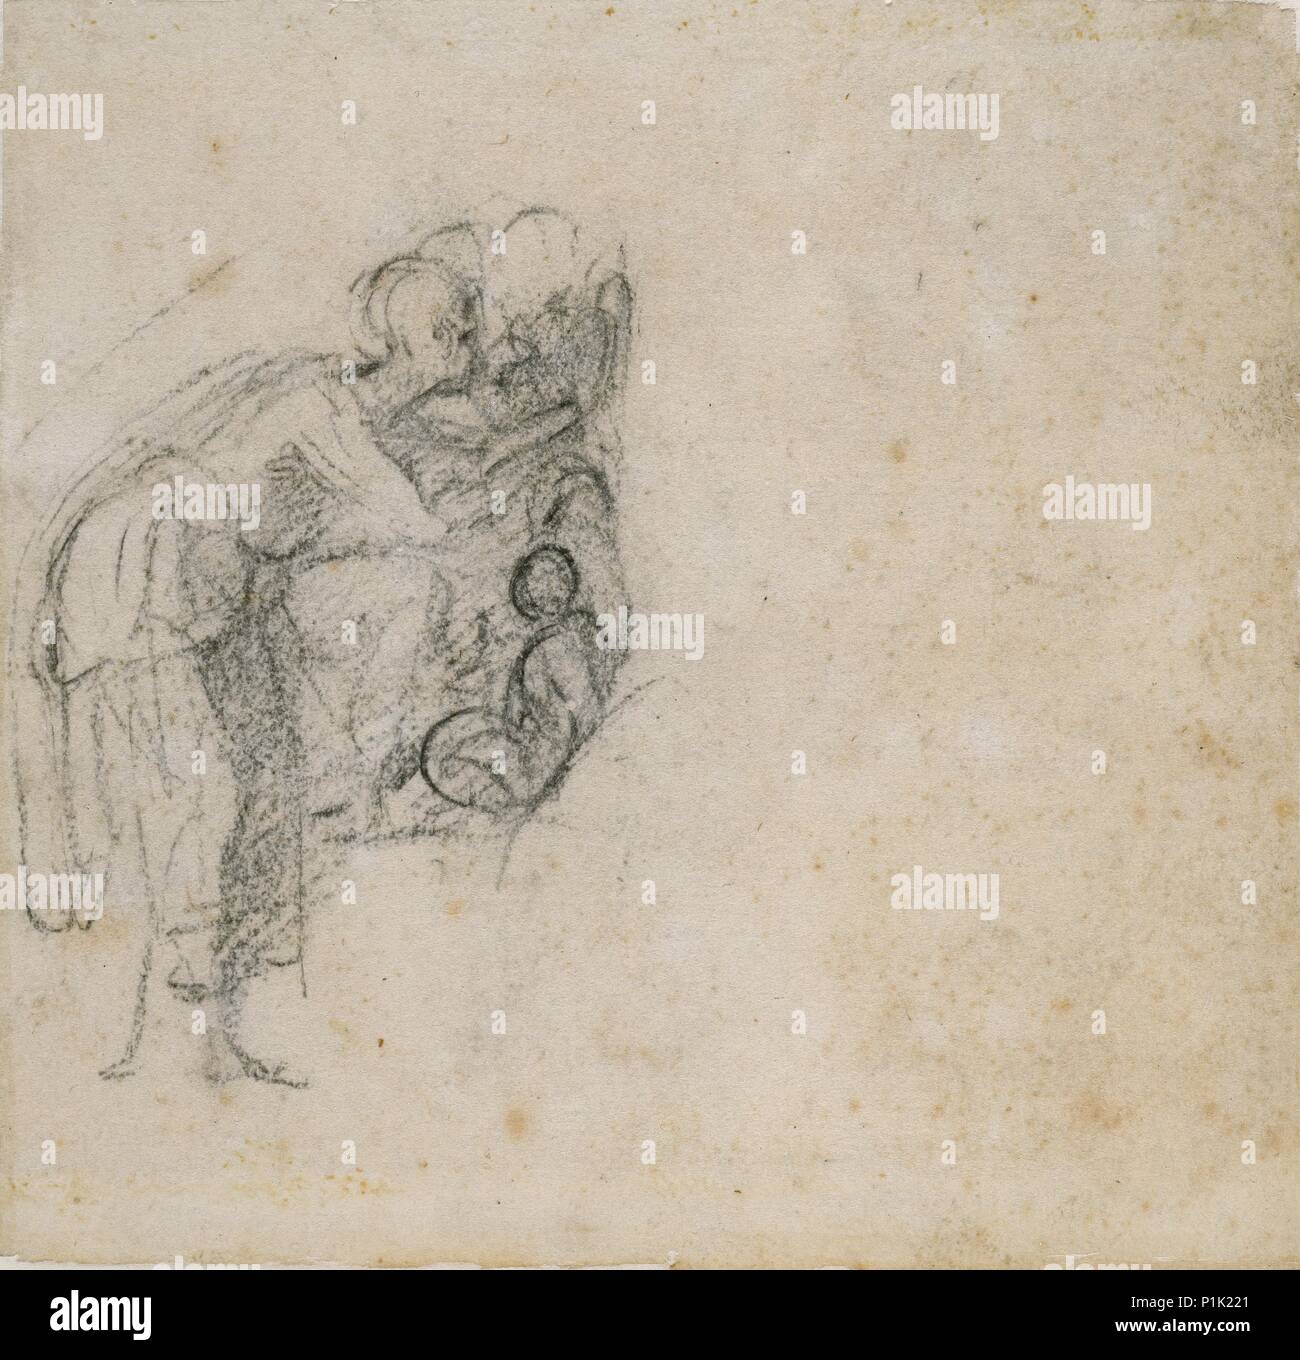 Seite aus einer Skizze Buch: eine Frau in Schwarz, c 1490-1560. Künstler: Michelangelo Buonarroti. Stockfoto